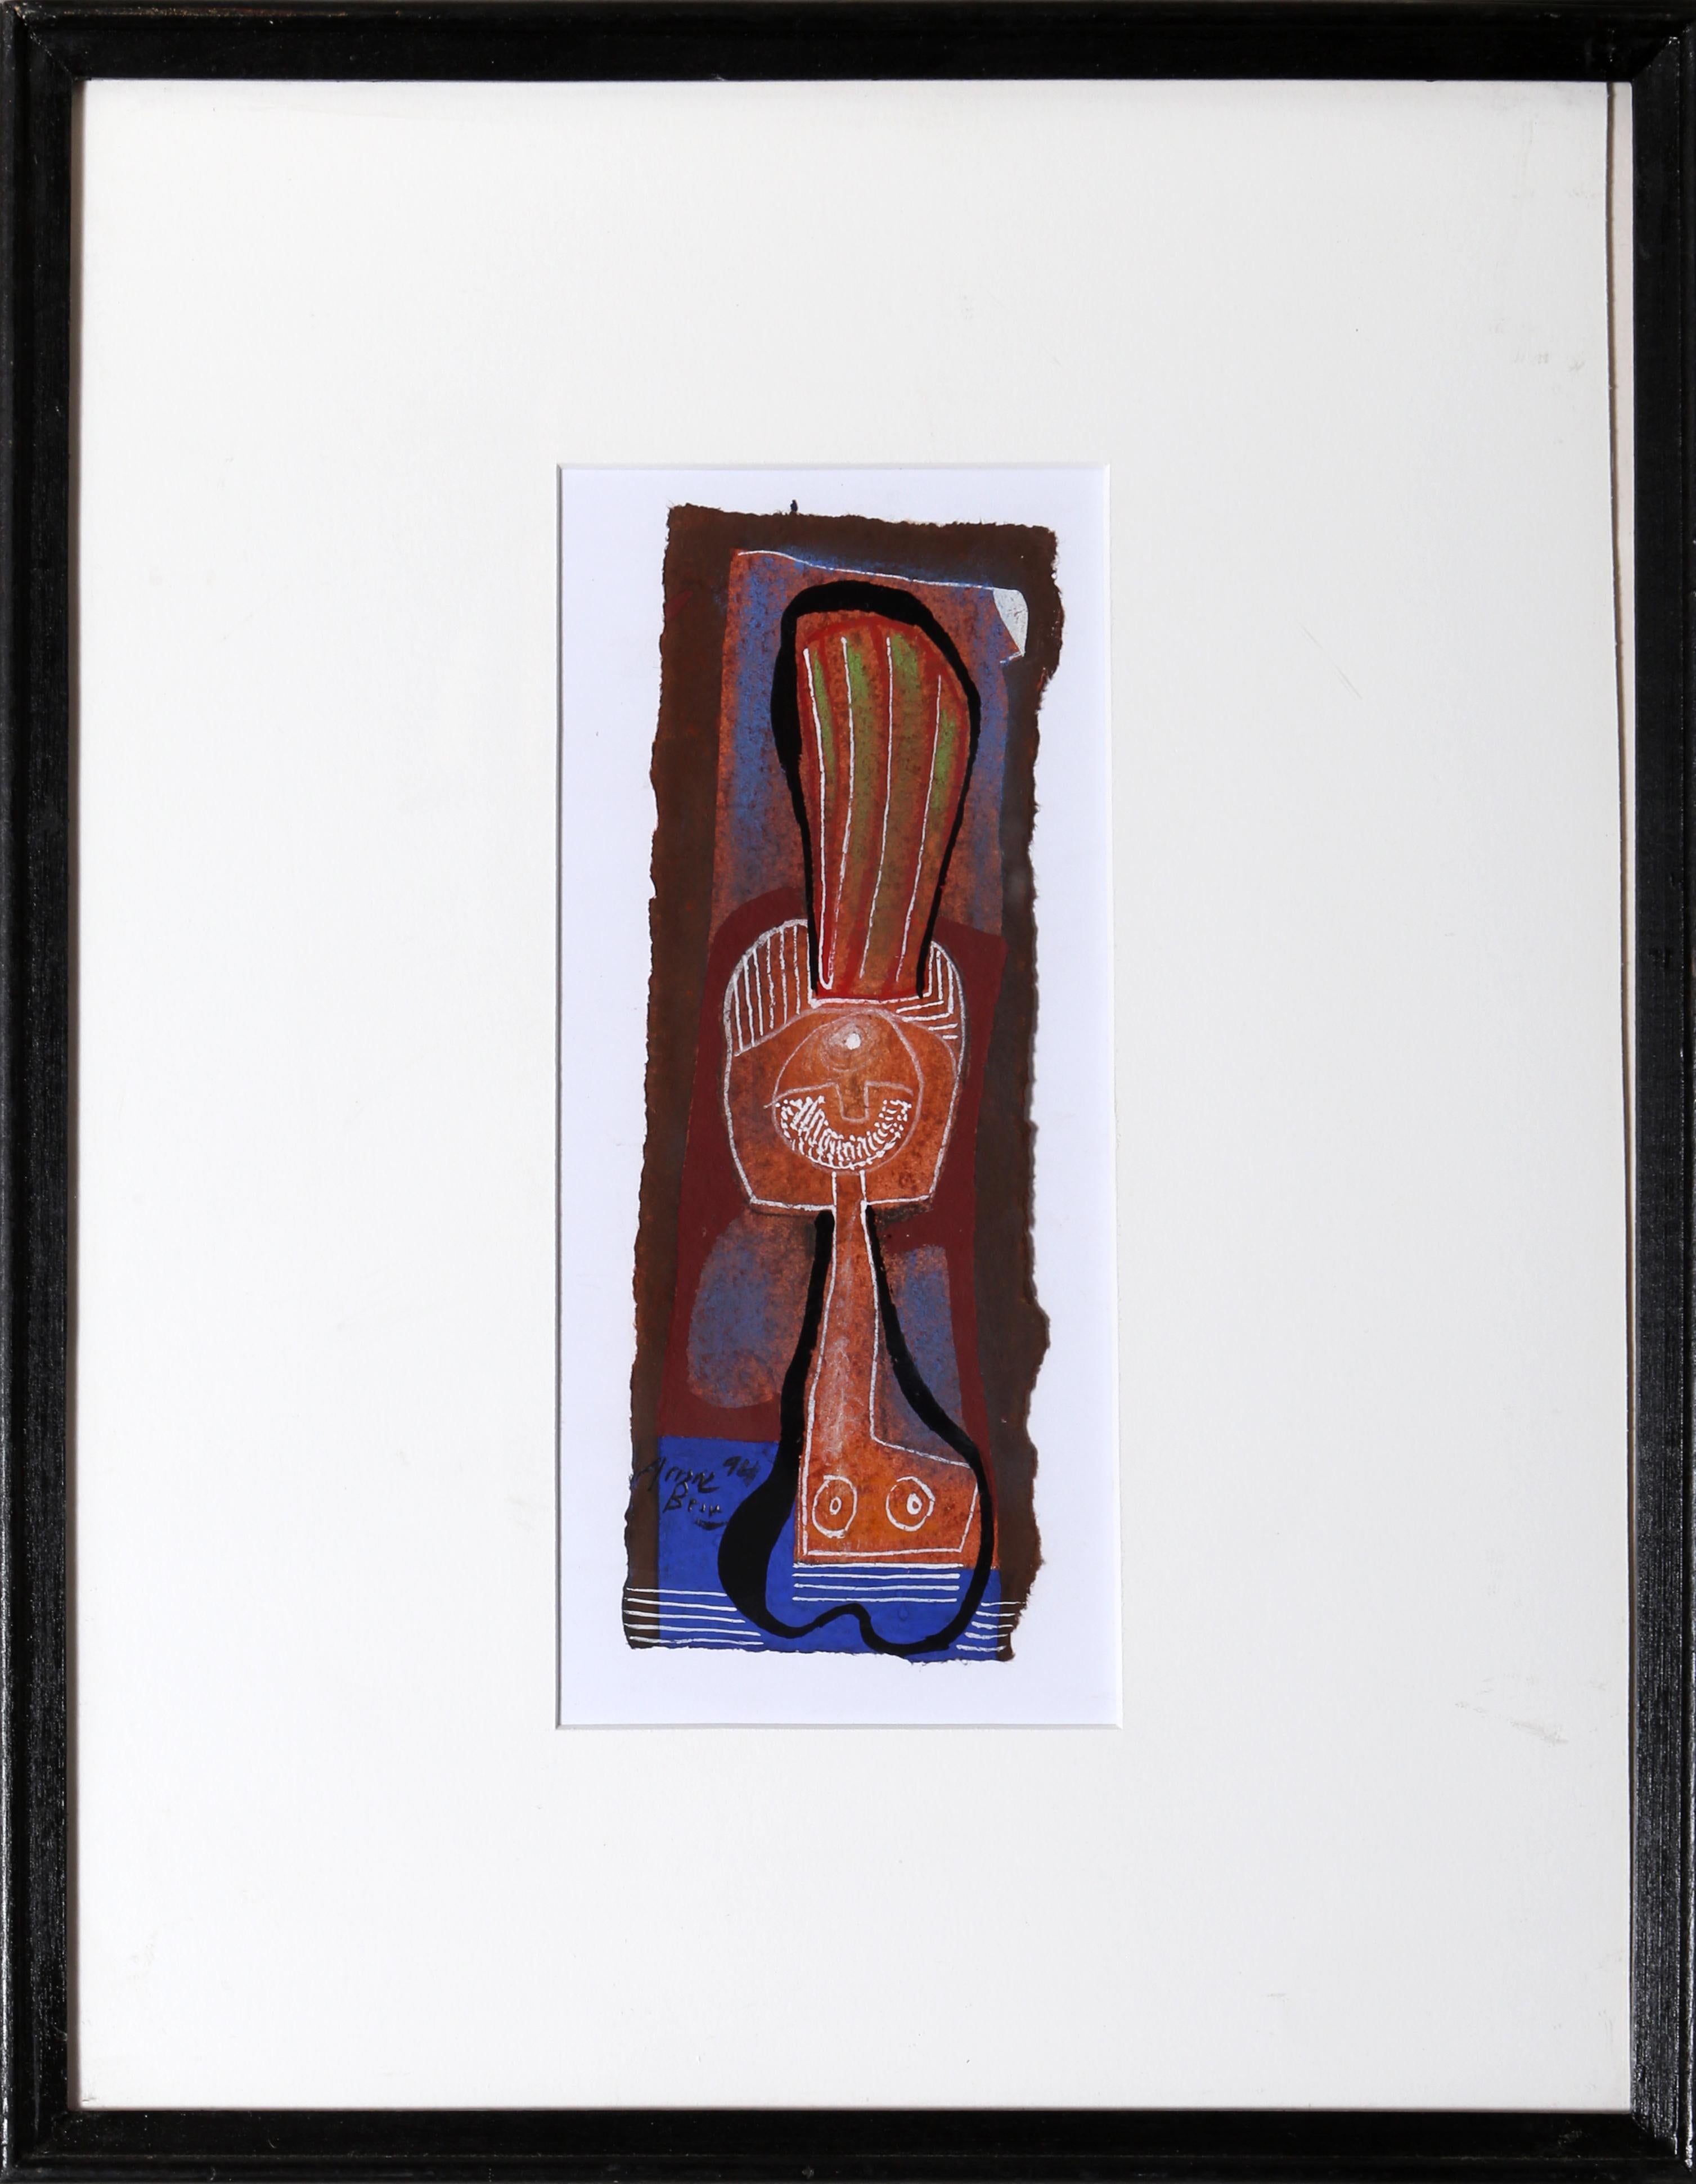 Abstraktes Mixed-Media-Kunstwerk des spanischen Künstlers Eduardo Arranz-Bravo.

Cadaques Nr.22
Eduardo Arranz-Bravo, Spanier (1941)
Datum: 1994
Mischtechnik auf Papier, signiert unten links
Größe: 8 x 2,5 Zoll (20,32 x 6,35 cm)
Rahmengröße: 14,75 x